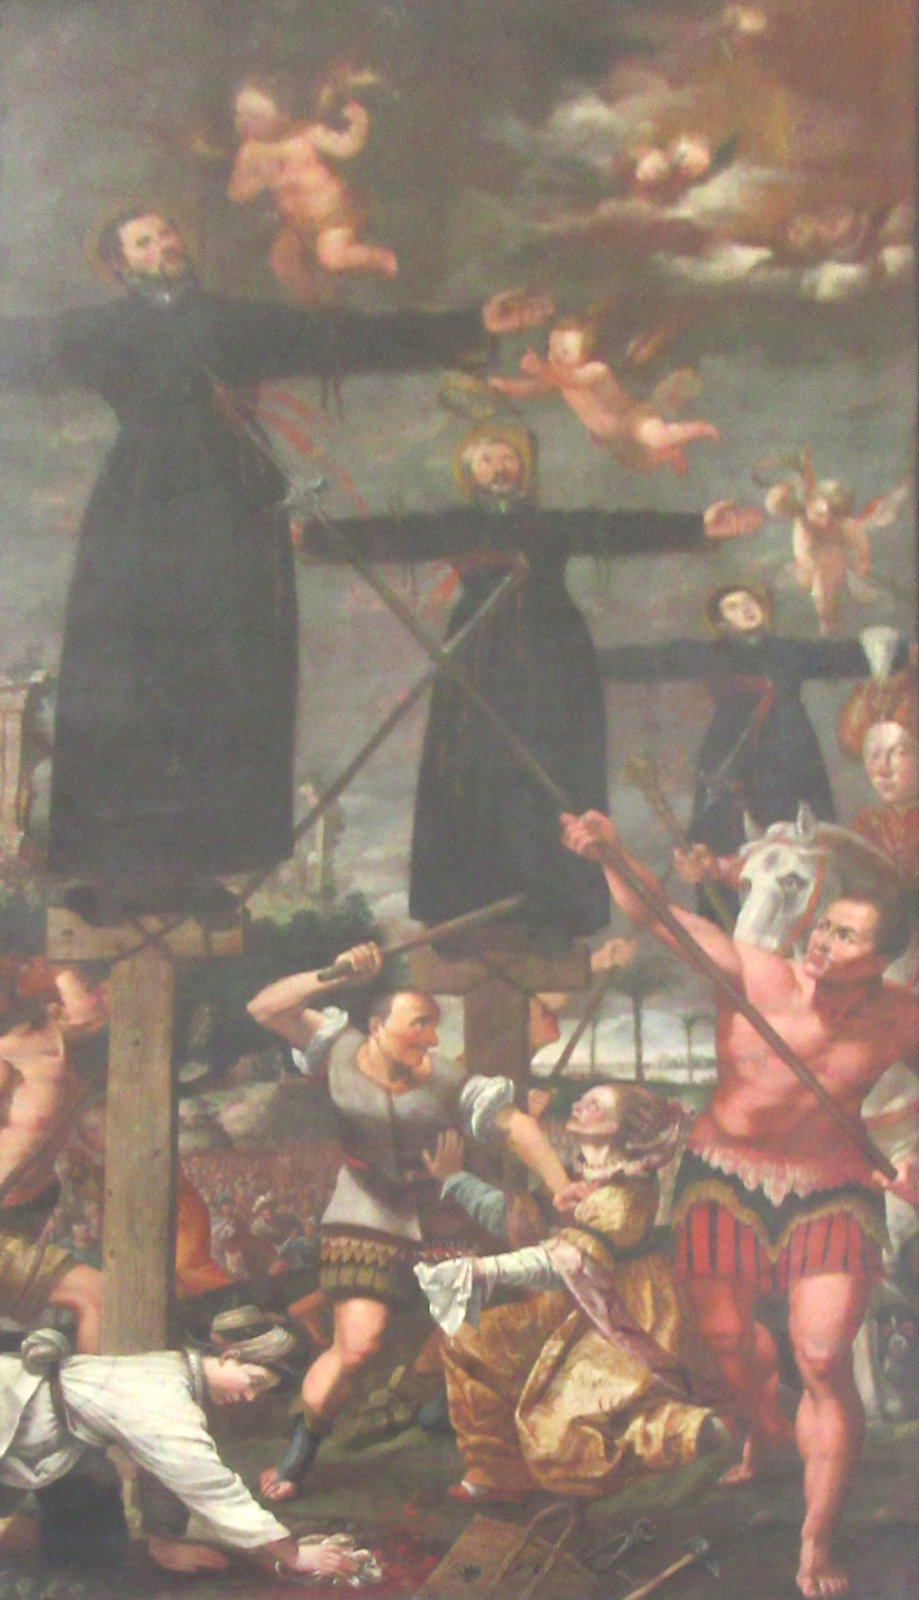 Das Martyrium von Paul Miki, Jakob Kisai und Johannes Soan de Goto, Gemälde in der Jesuitenkirche in Innsbruck